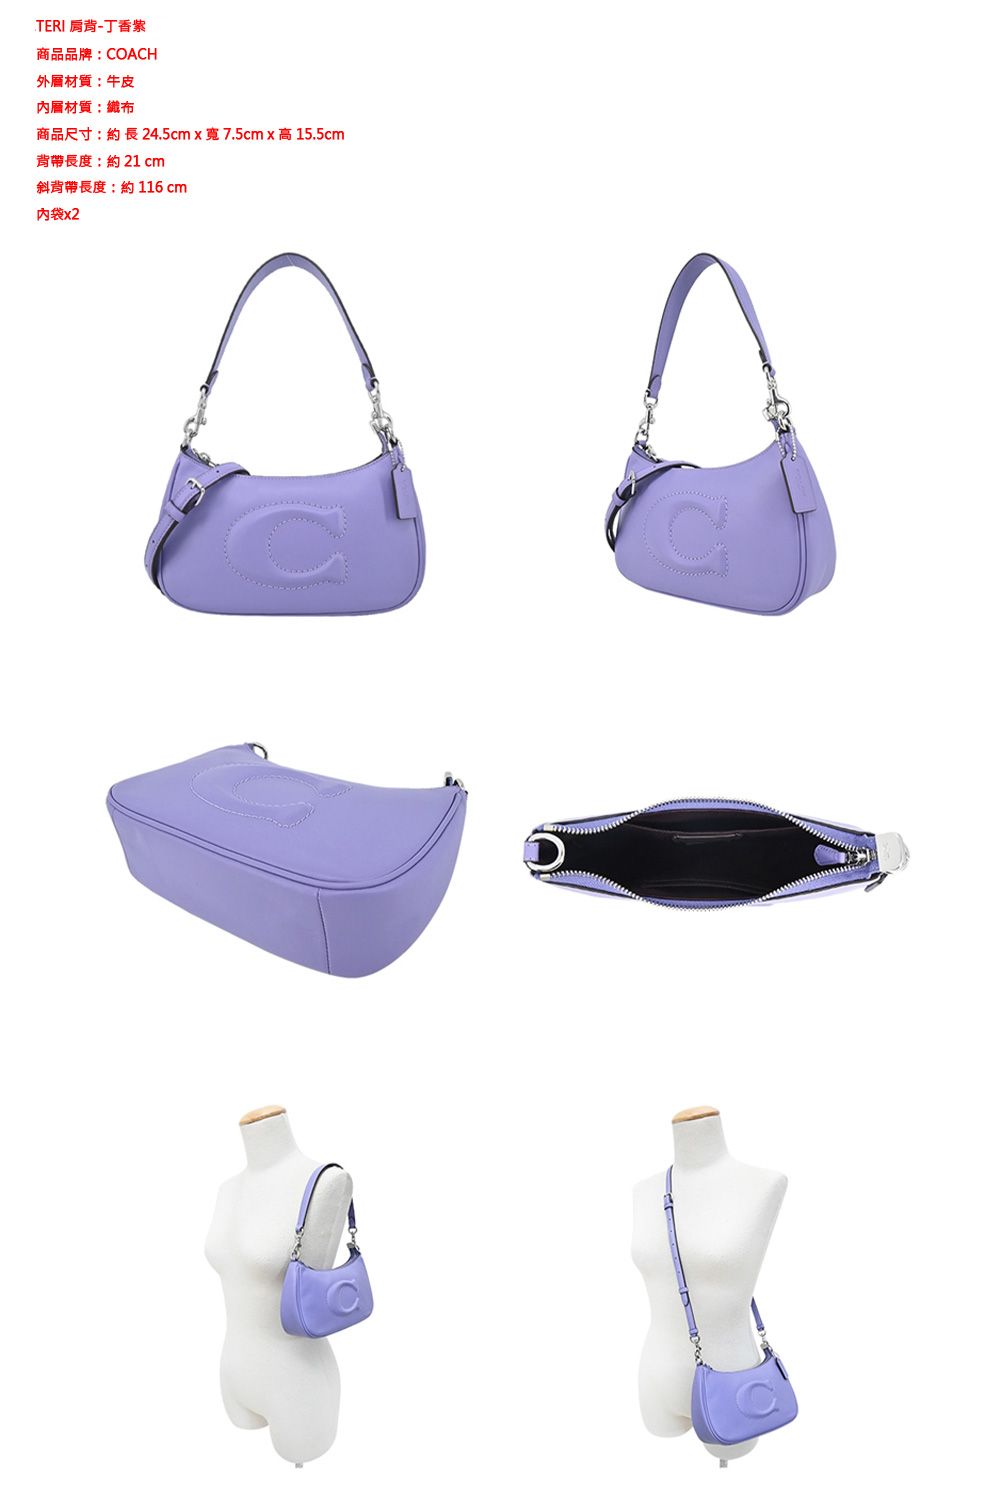 TERI -丁香紫商品品牌COACH外層材質:牛皮材質:商品尺寸:約長24.5cmx寬7.5cmx高 15.5cm背帶長度:約21 cm斜背帶長度:約 116 cm內袋x2